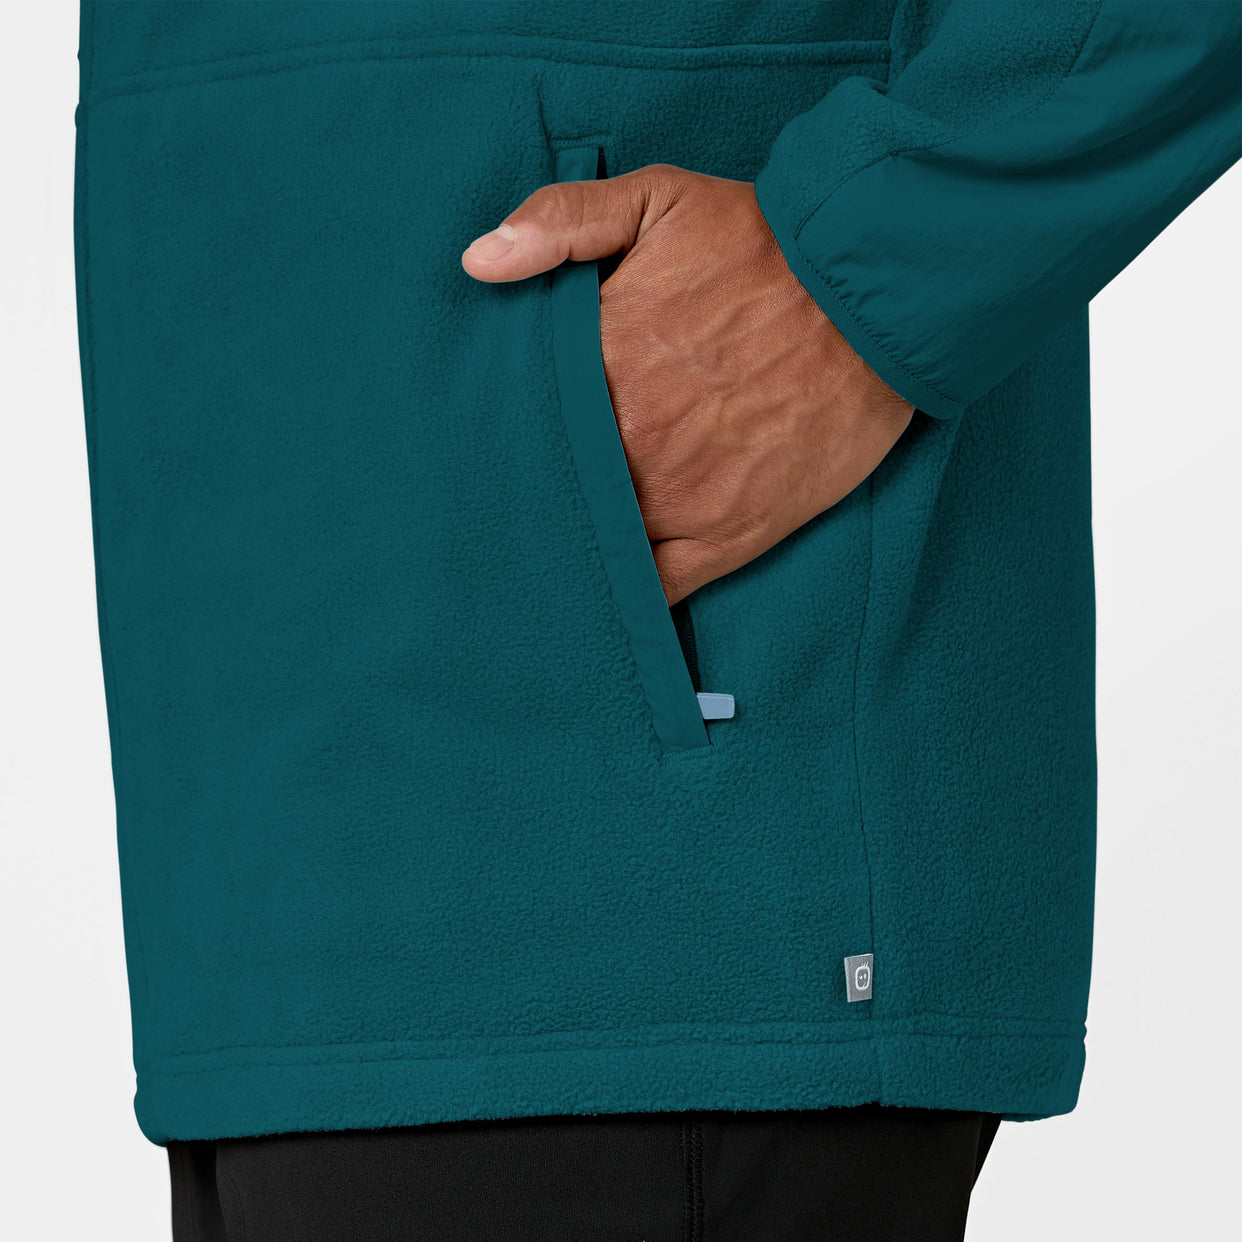 Slate Men's Micro Fleece Zip Jacket Caribbean Blue back detail